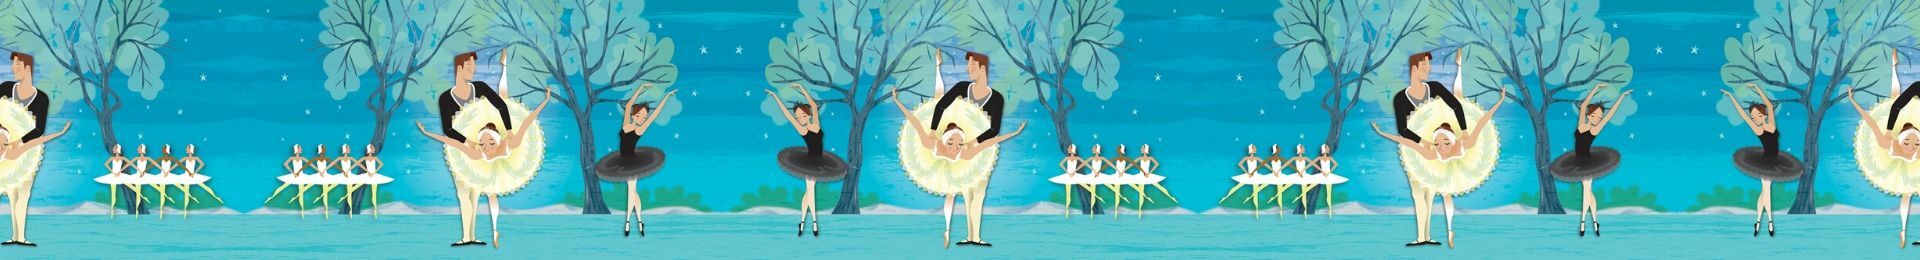 My First Ballet: Swan Lake banner image